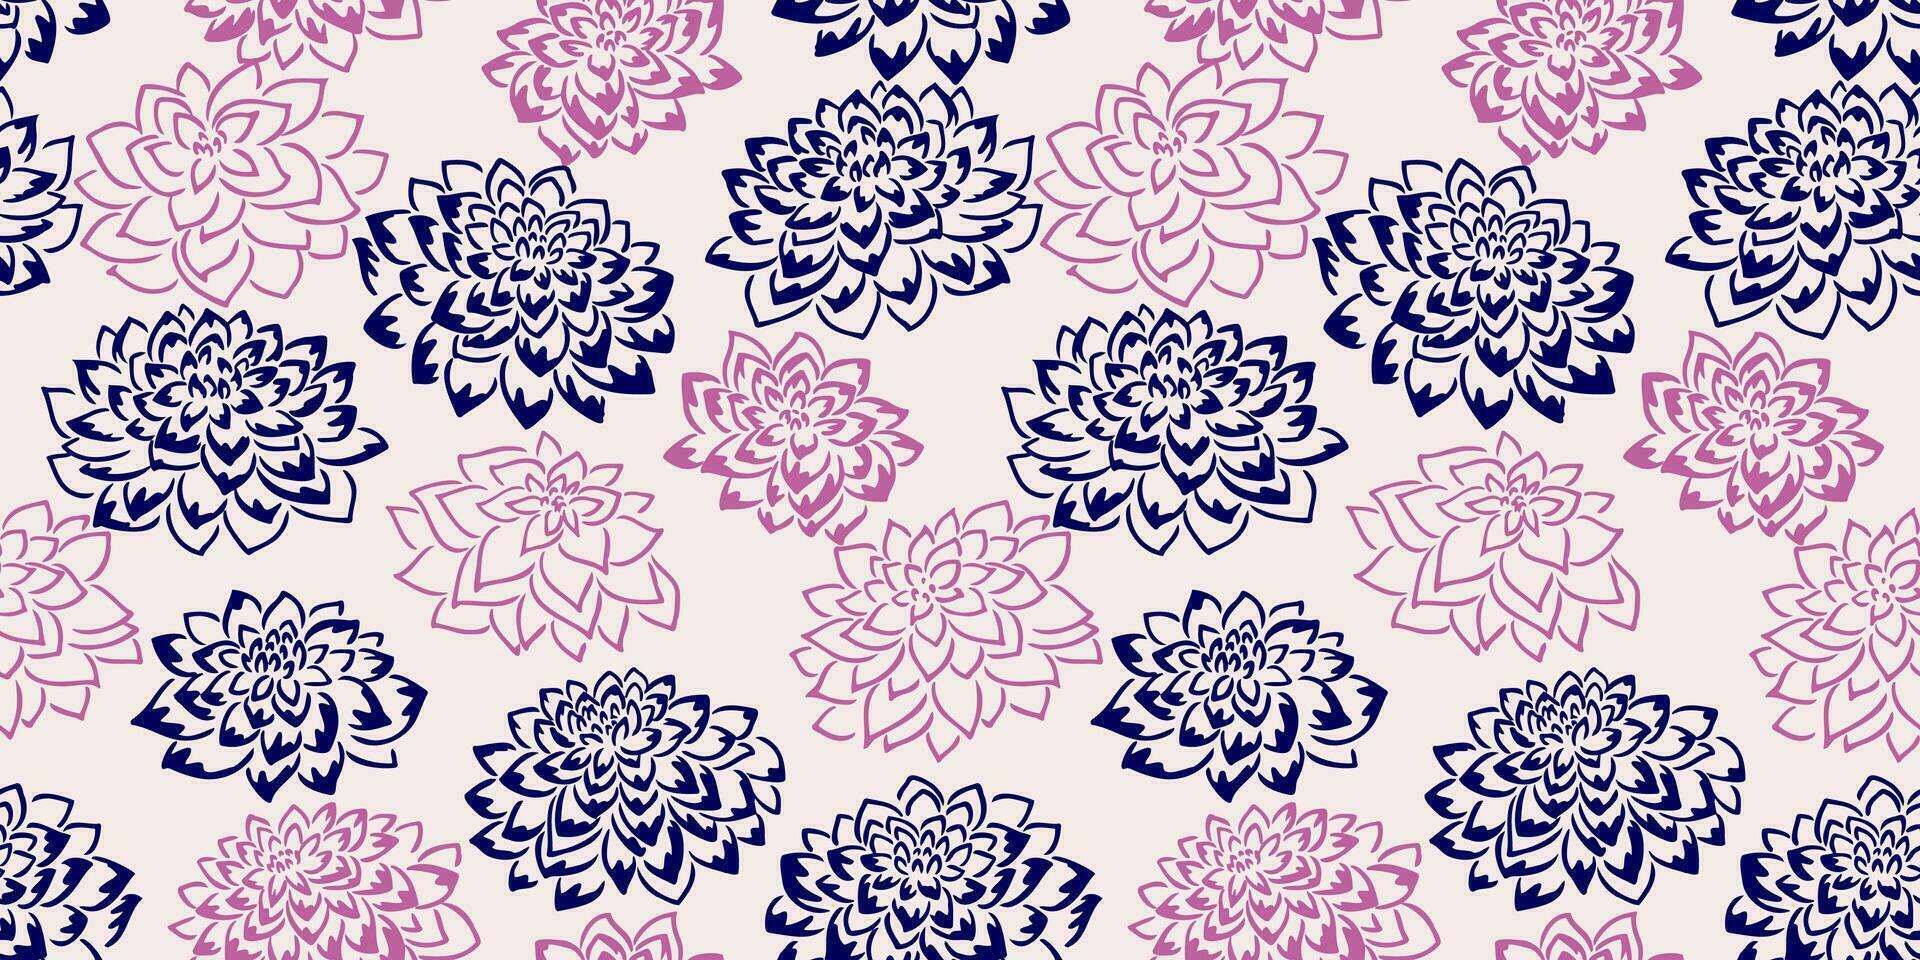 abstrakt nahtlos Muster mit Form, Gliederung Blumen. Vektor Hand gezeichnet skizzieren. einfach stilisiert Hintergrund texturiert Blumen- drucken. Design zum Mode, Stoff, Hintergrund.